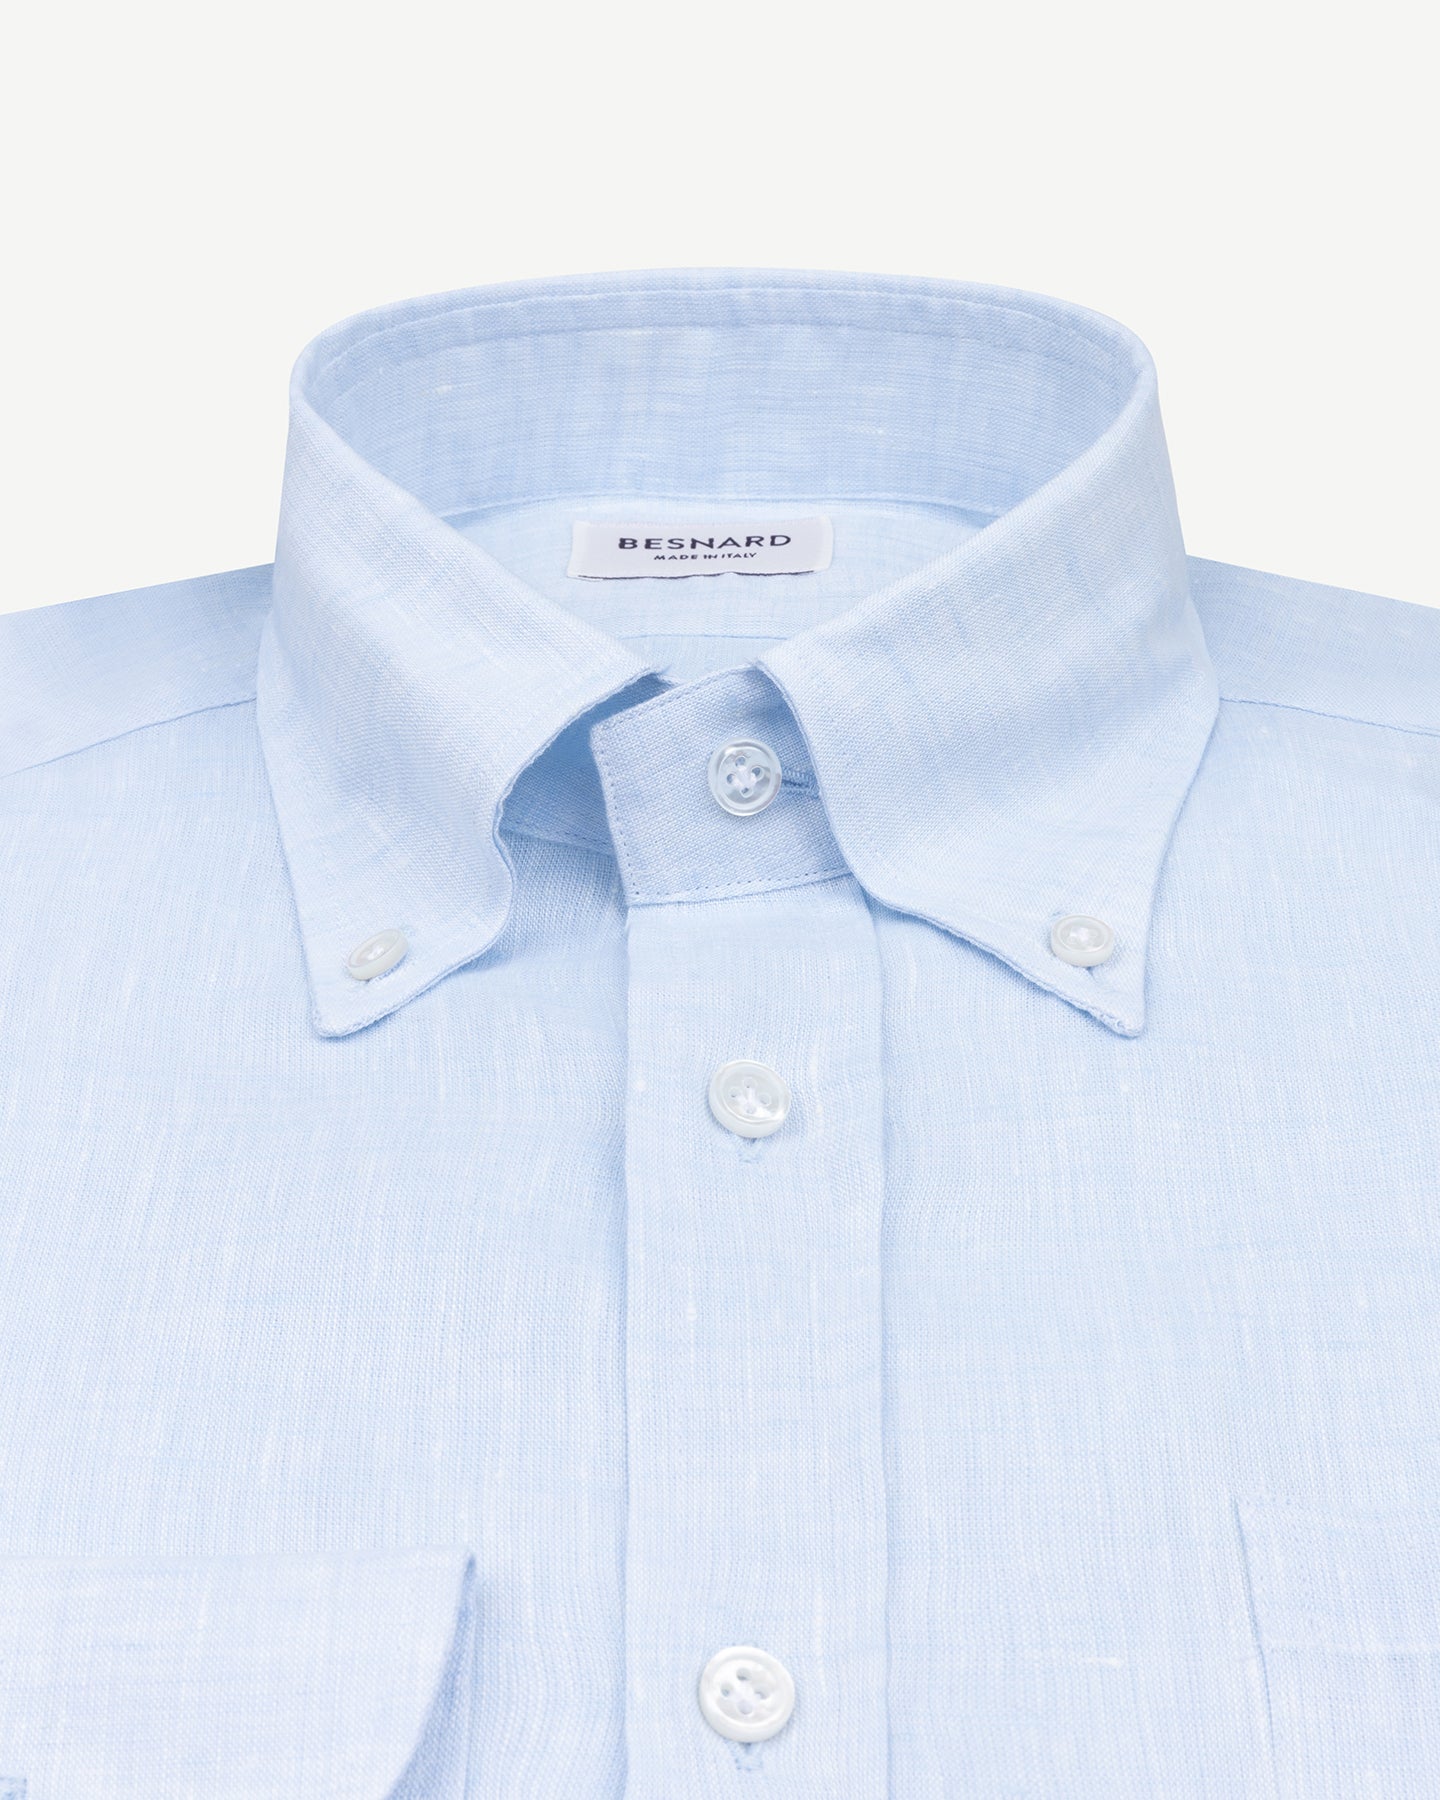 Light blue linen shirt with button down collar